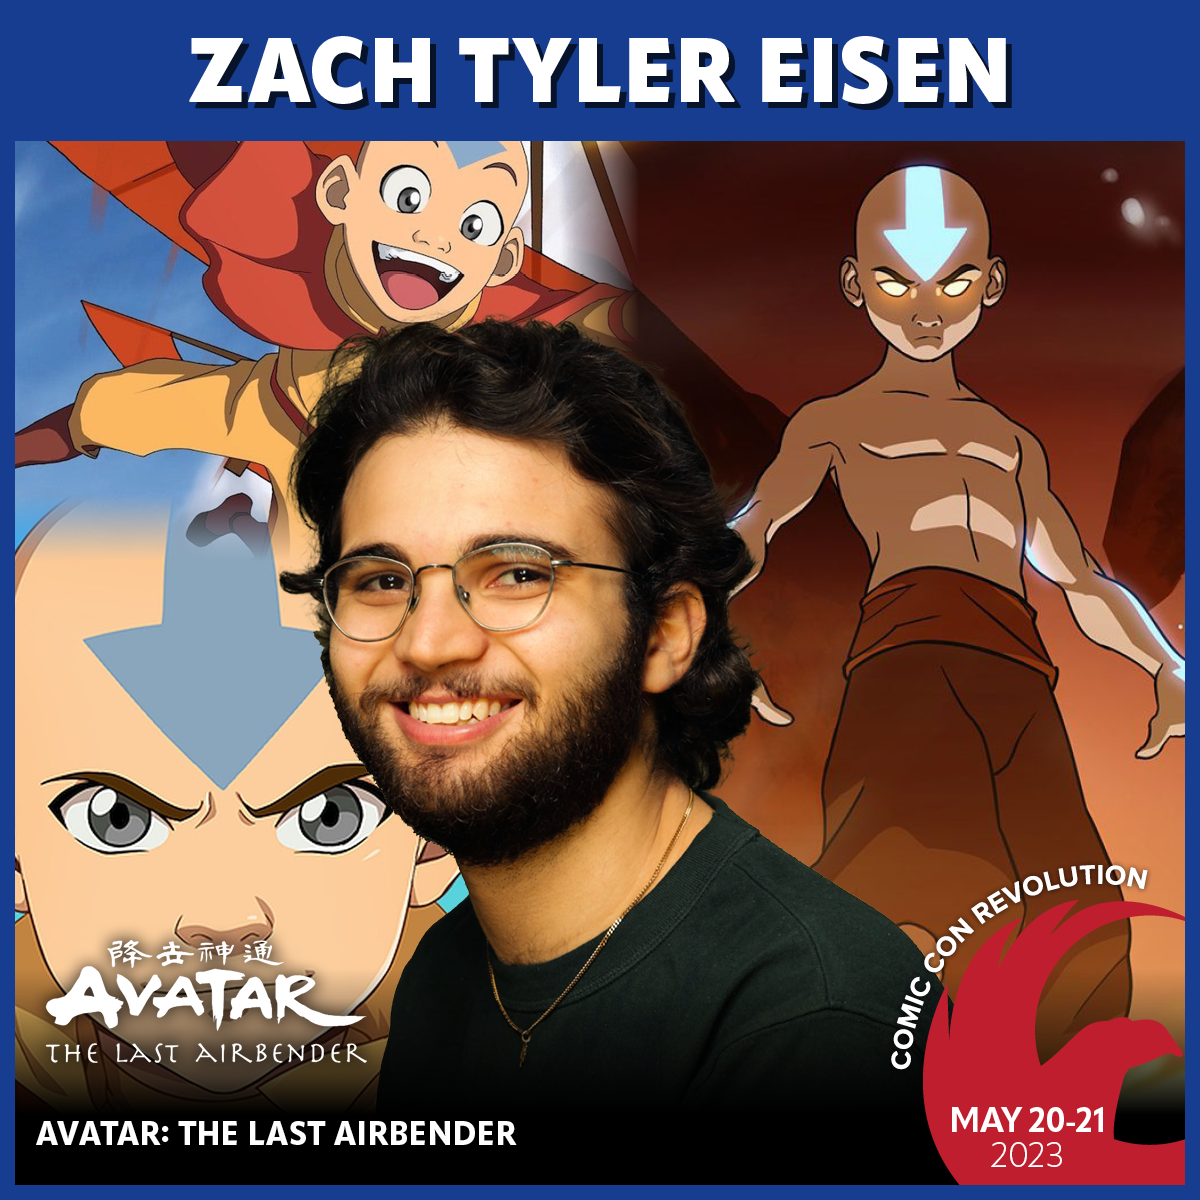 Comic Con Revolution 2023 Zach Tyler Eisen